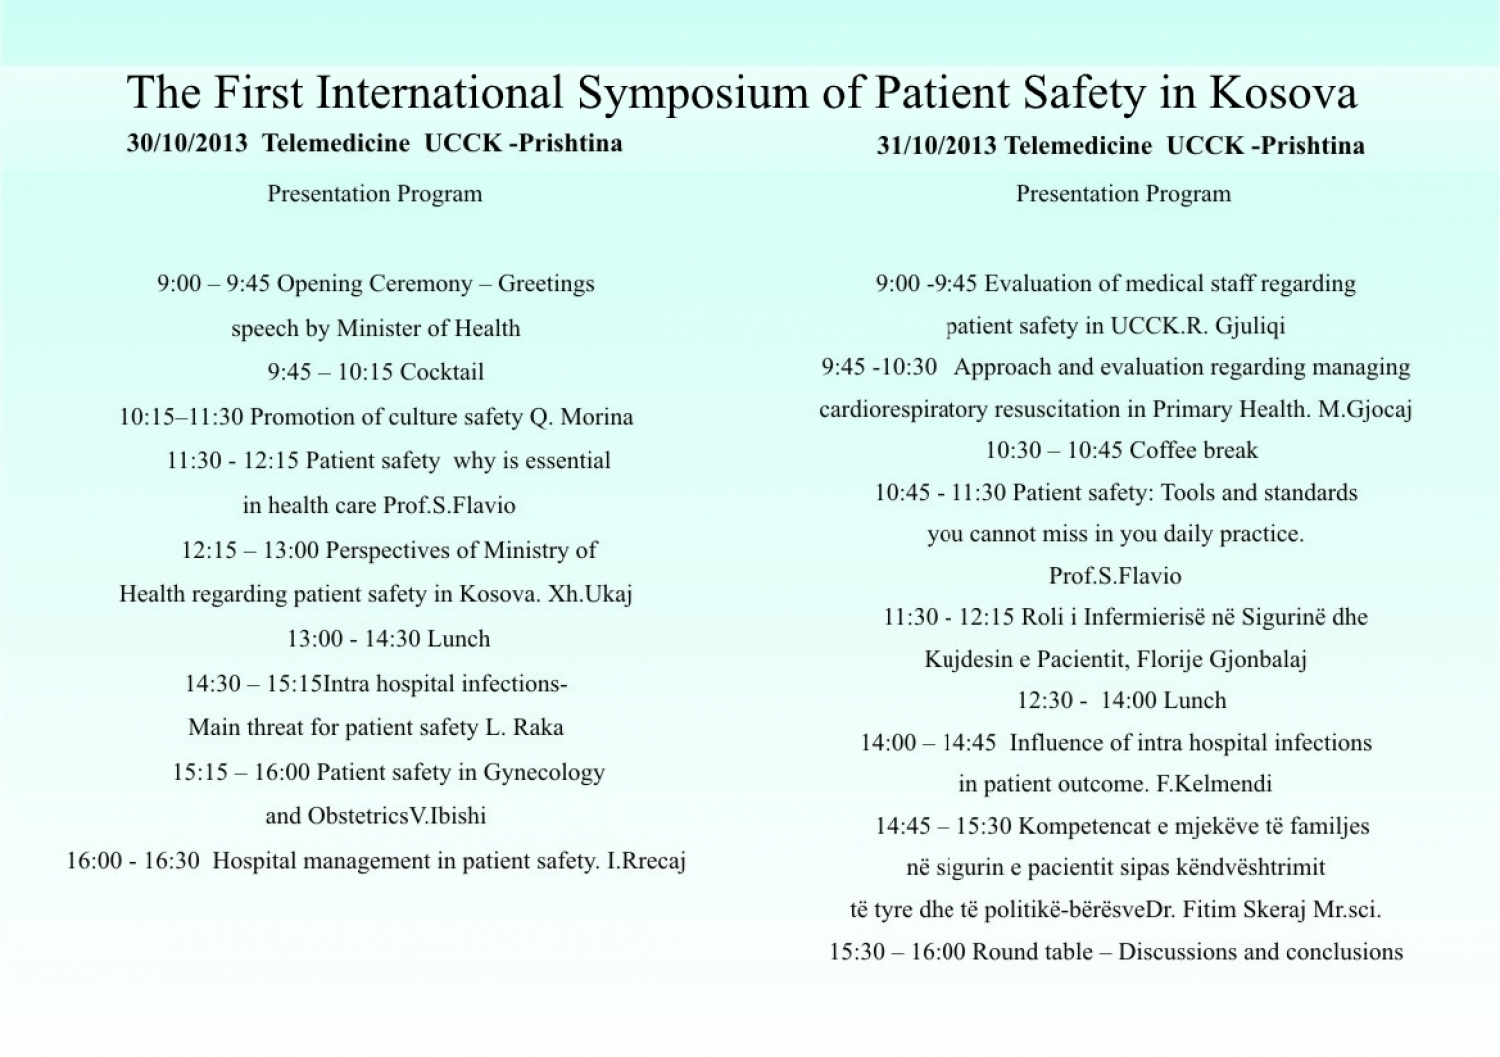 Simposiumi i parë ndërkombëtar mbi sigurinë e pacienti